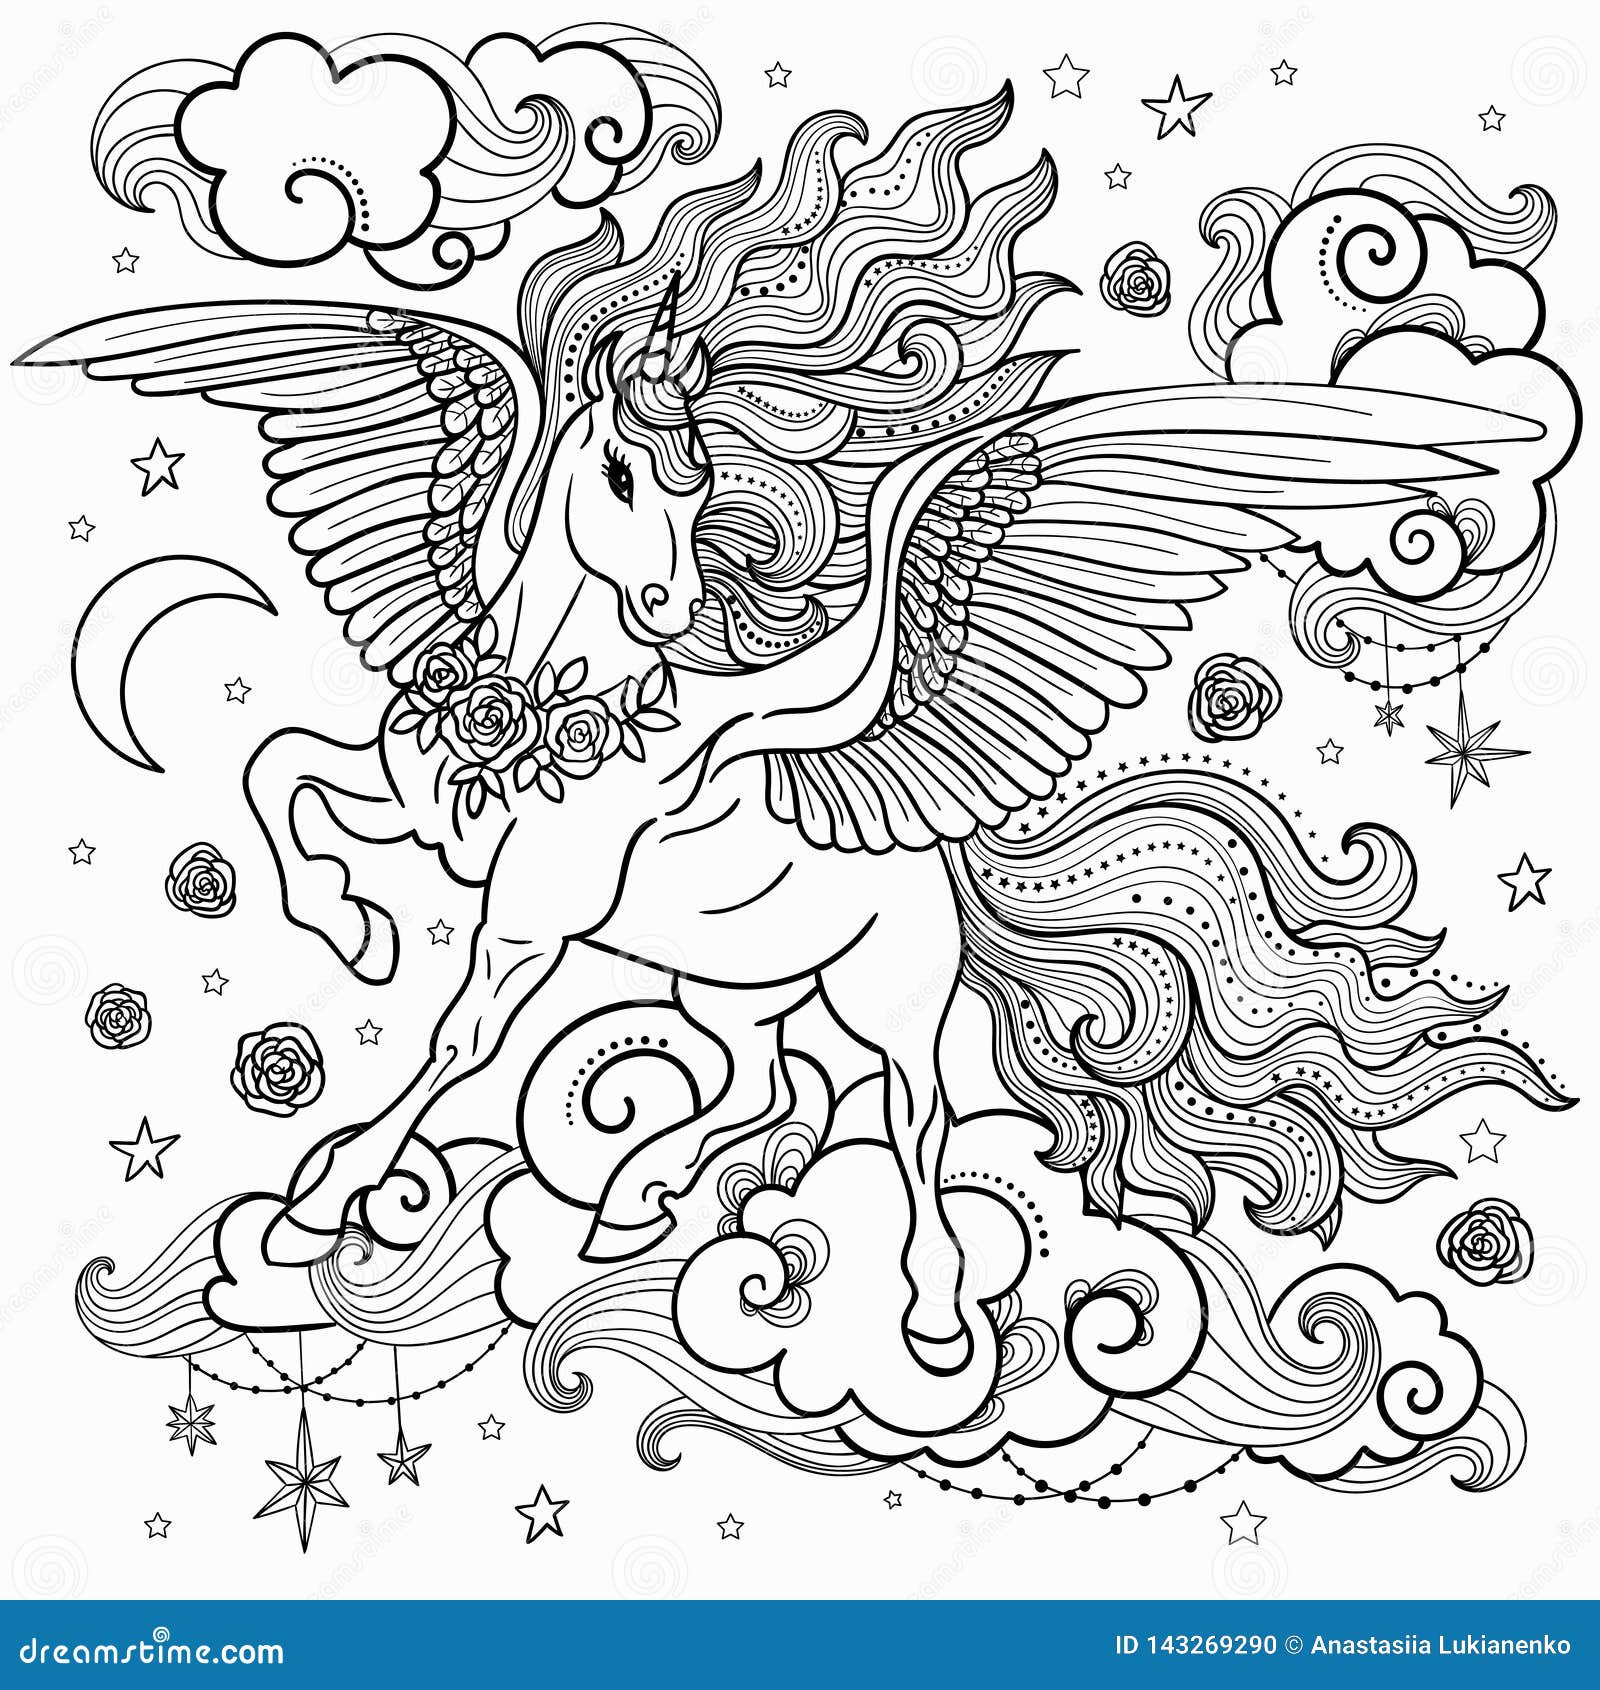 Featured image of post Juegos De Pintar Unicornios Y Princesas Axel valdovinos nos trae luna y el unicornio uno de los cuentos m s fant sticos y maravillosos de unicornios escritos especialmente para las ni as